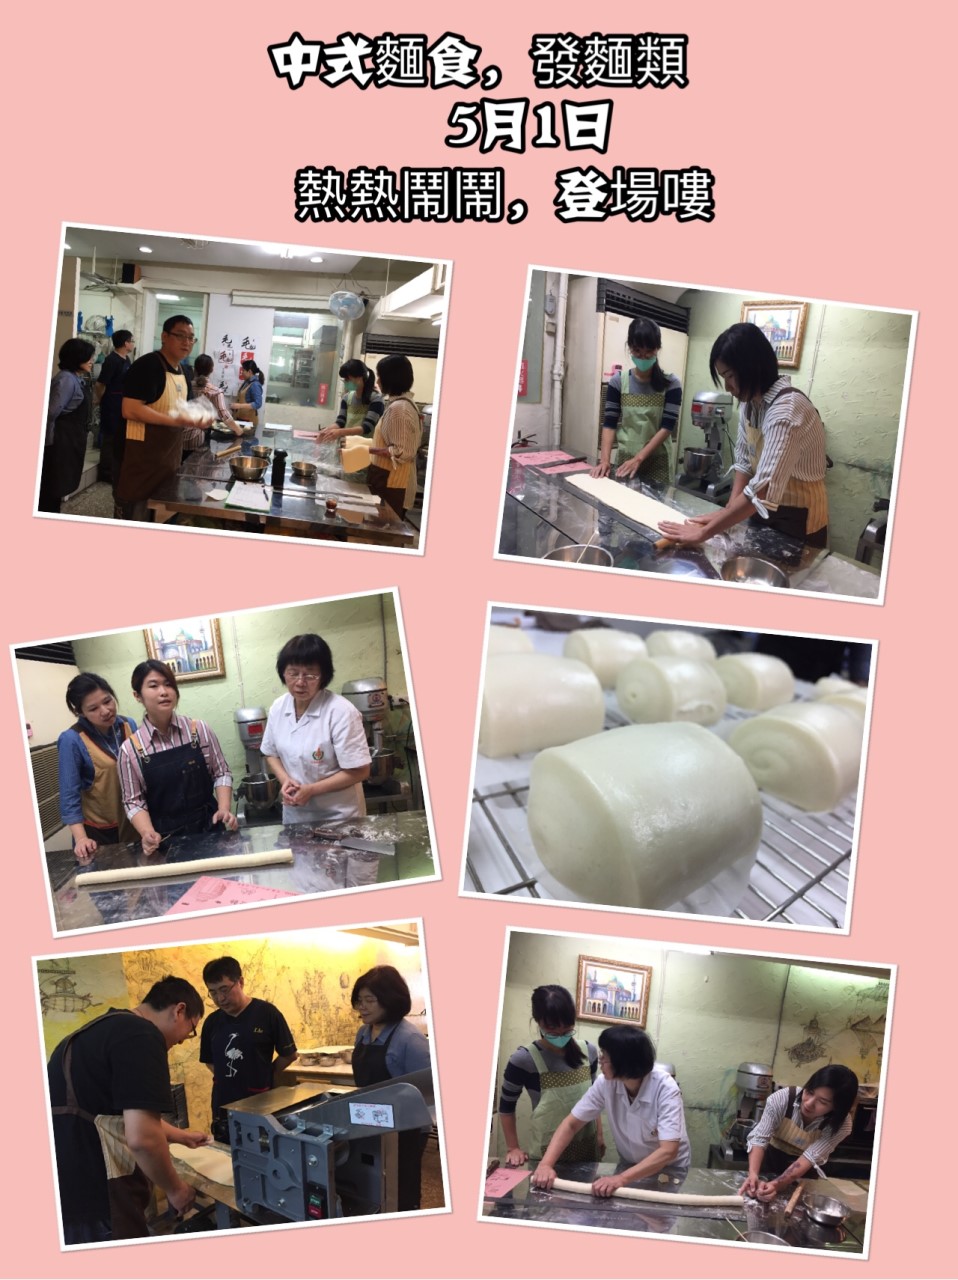 台北烘焙丙級課程證照班-蛋糕麵包檢定保證班 | 毛毛烘焙工作坊